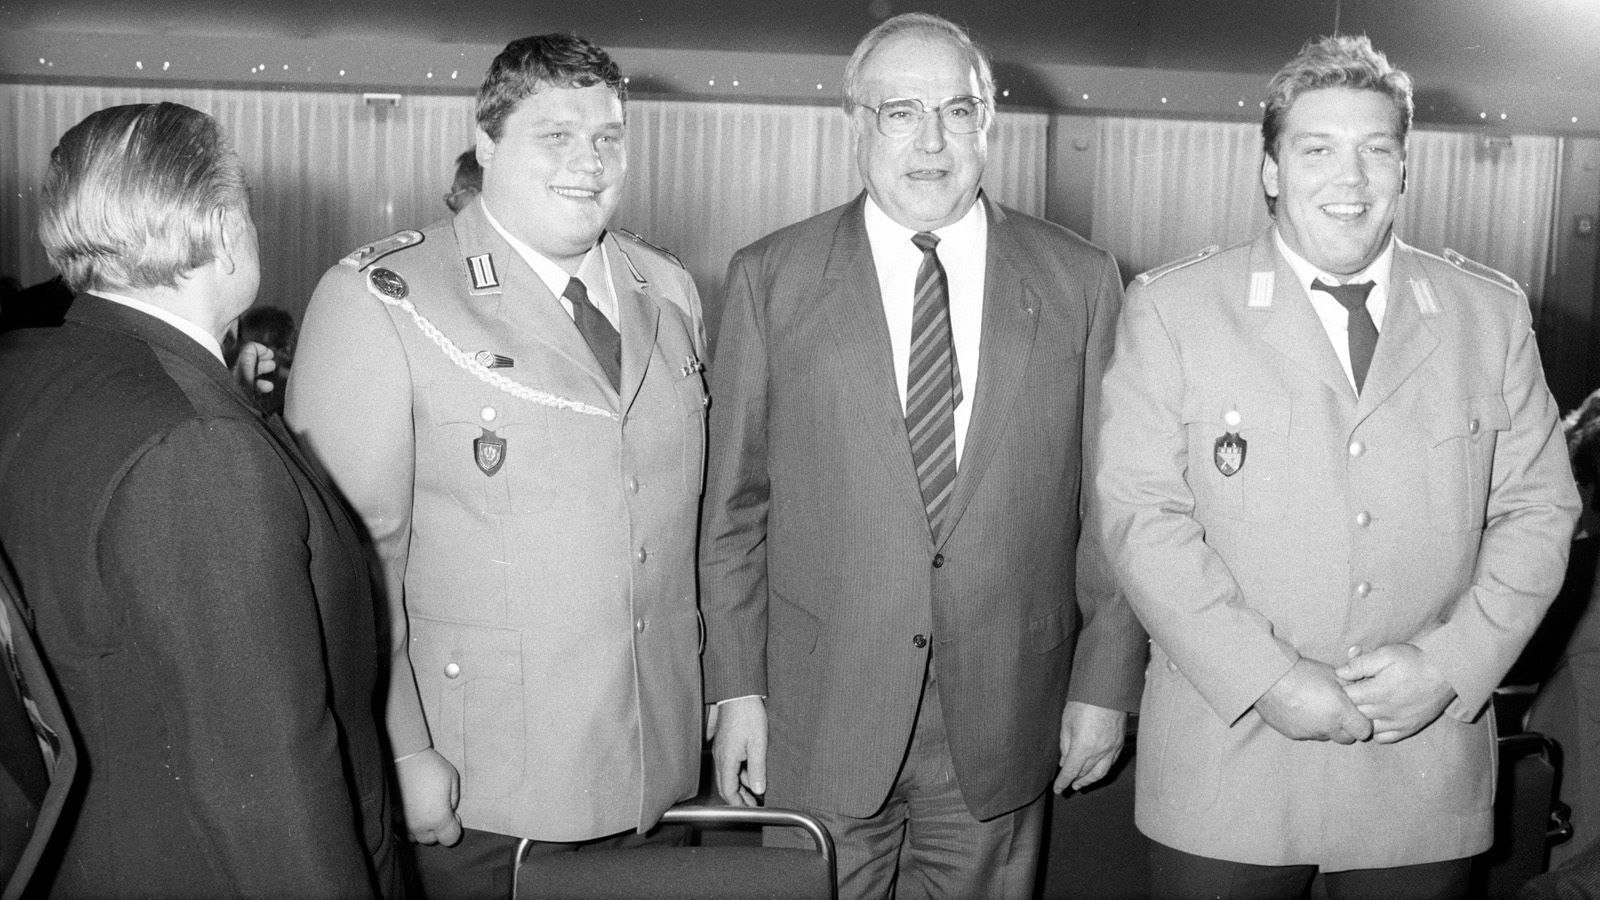 
                <strong>Helmut Kohl ist Bundeskanzler</strong><br>
                Zu jener Zeit ist Helmut Kohl (2. v. re.) bereits sechs Jahre Bundeskanzler und bleibt es auch noch bis nach der Wende ins Jahr 1998. Hier im Jahr 1988 empfängt Kohl die Olympia-Teilnehmer Manfred Nerlinger (2. v. li.) und Martin Zawieja (re.). Ebenfalls auf dem Bild: NOK-Präsident Willi Daume (li).
              